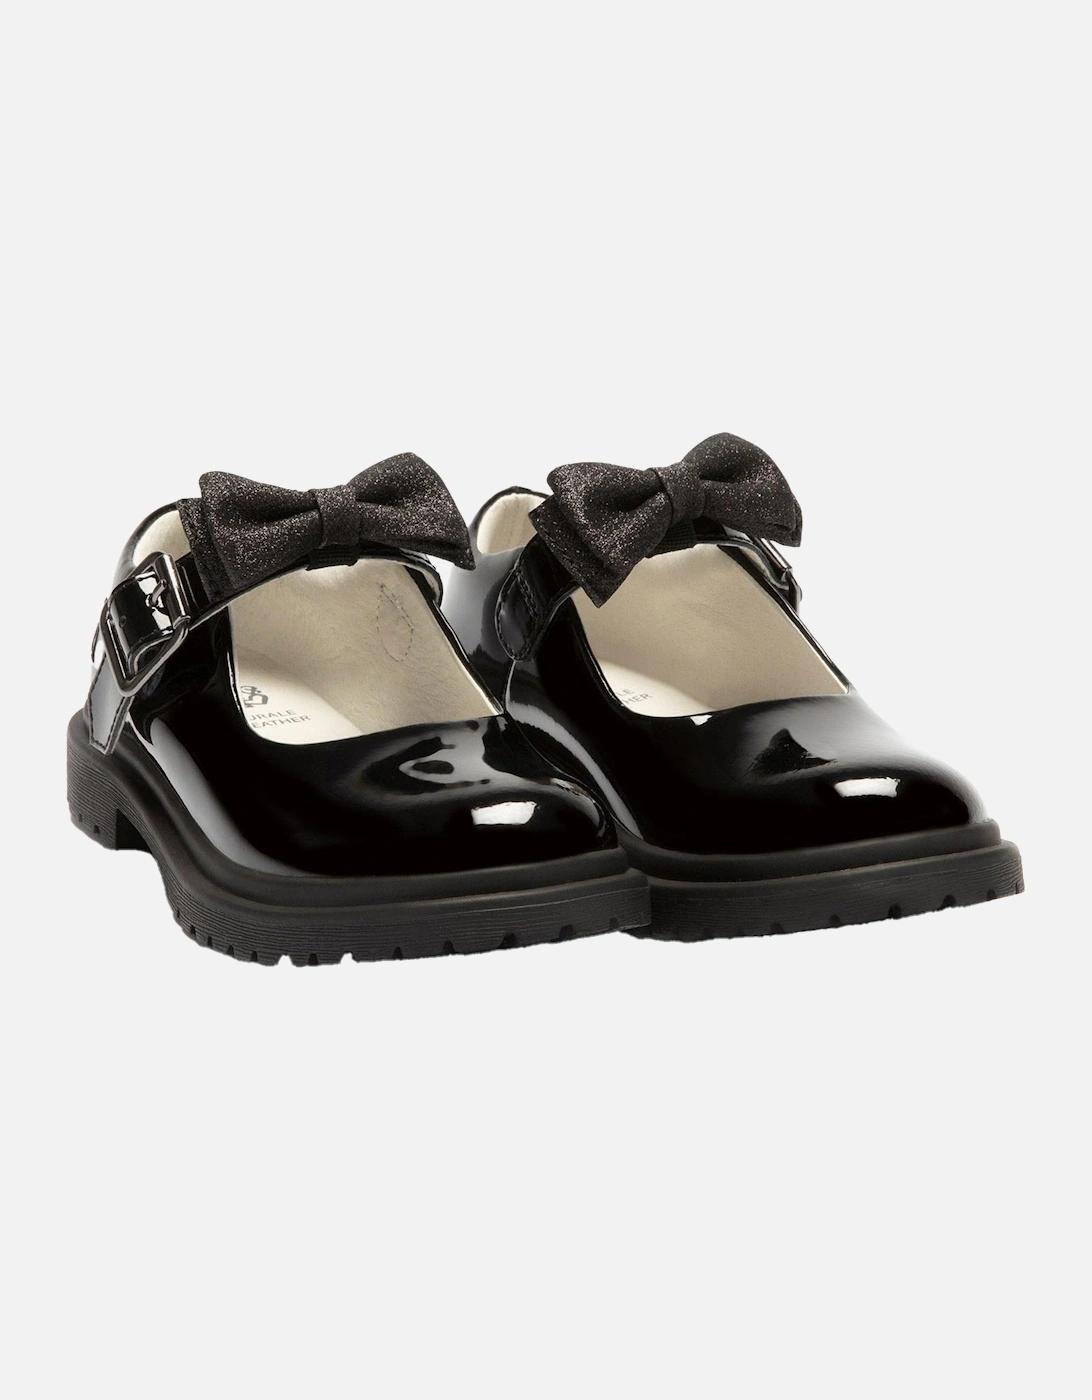 Juniors Miss LK Mollie Patent School Shoes (Black)